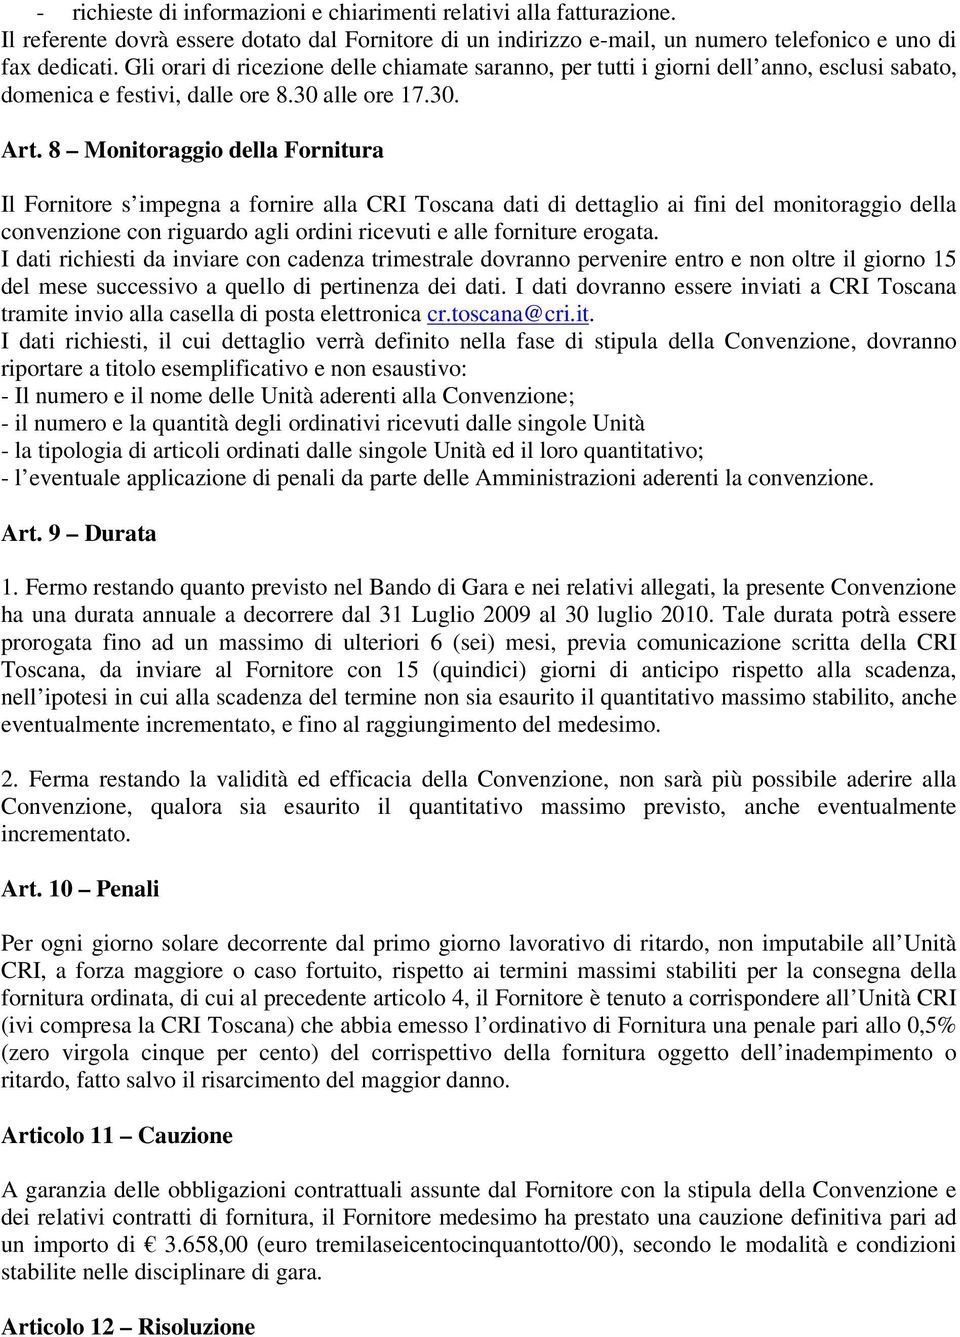 8 Monitoraggio della Fornitura Il Fornitore s impegna a fornire alla CRI Toscana dati di dettaglio ai fini del monitoraggio della convenzione con riguardo agli ordini ricevuti e alle forniture